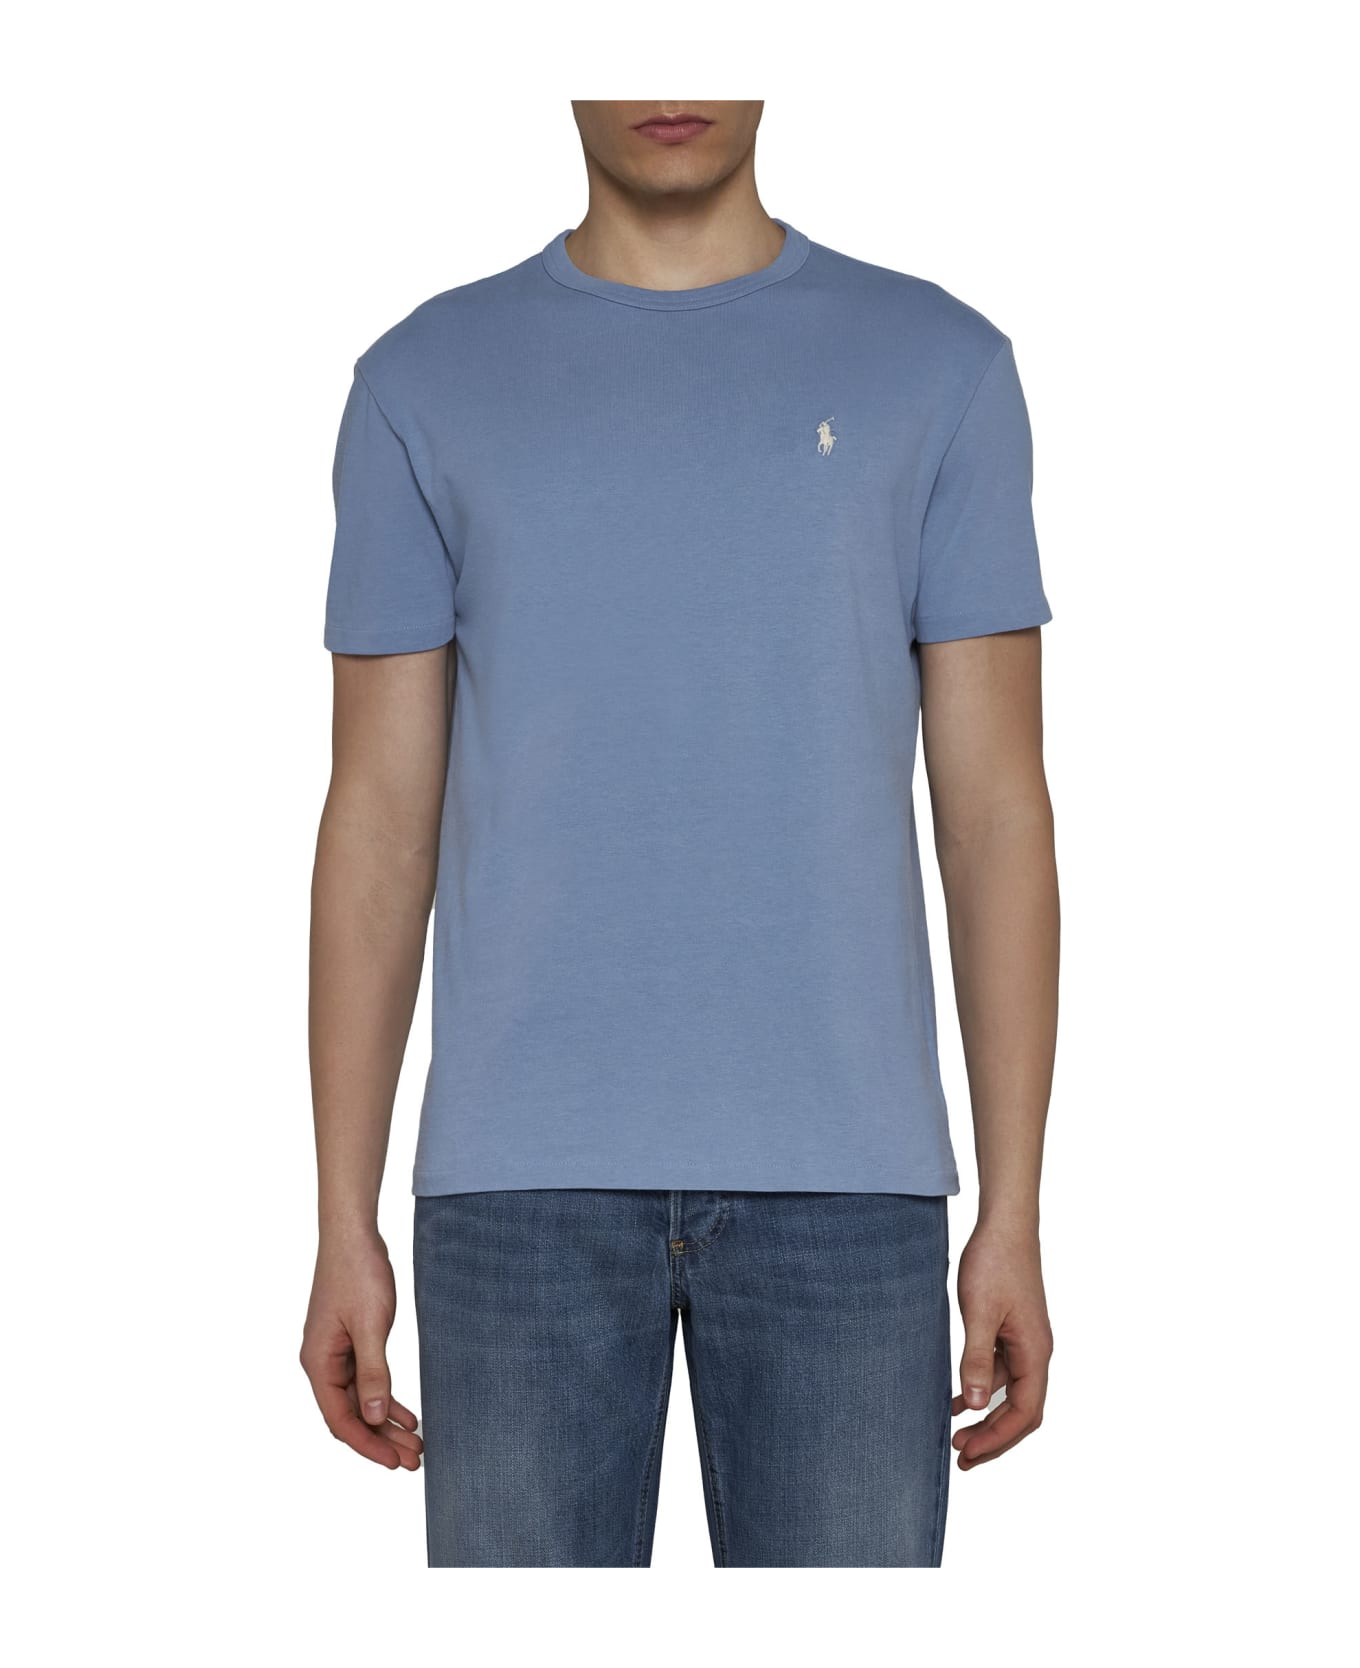 Polo Ralph Lauren T-shirt - Channel blue